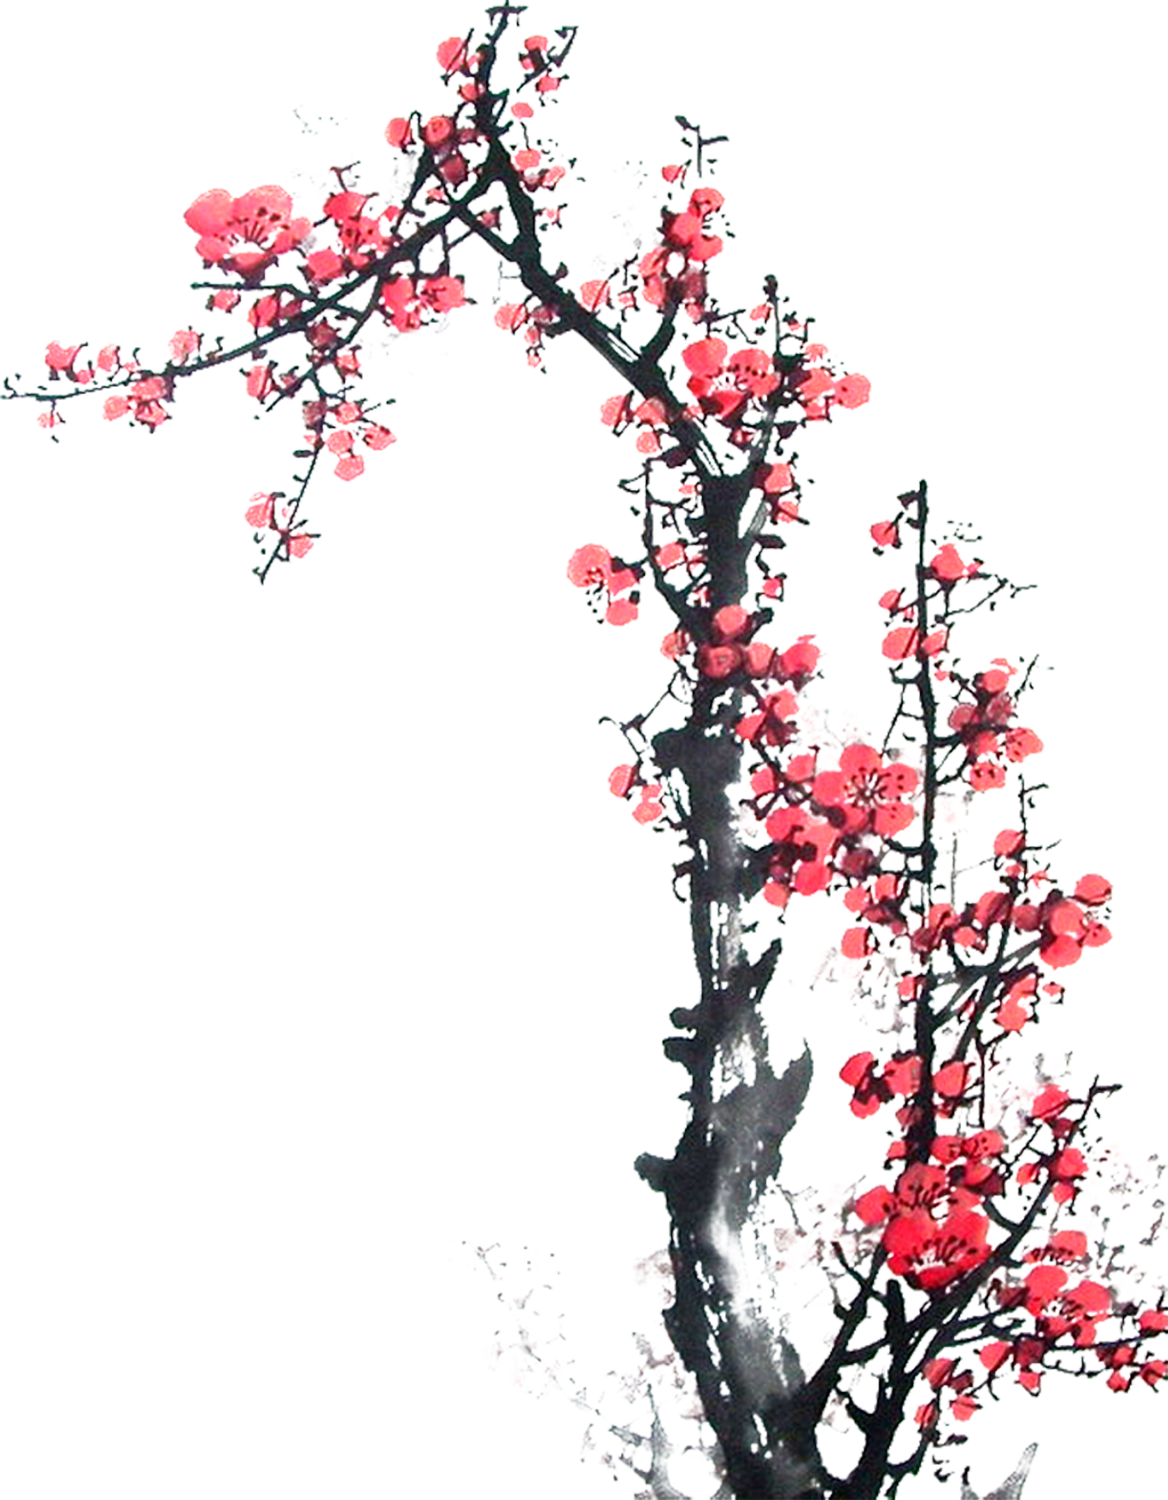 リアルタッチな花のイラスト フリー素材 No 1043 梅の花 枝 赤 和風